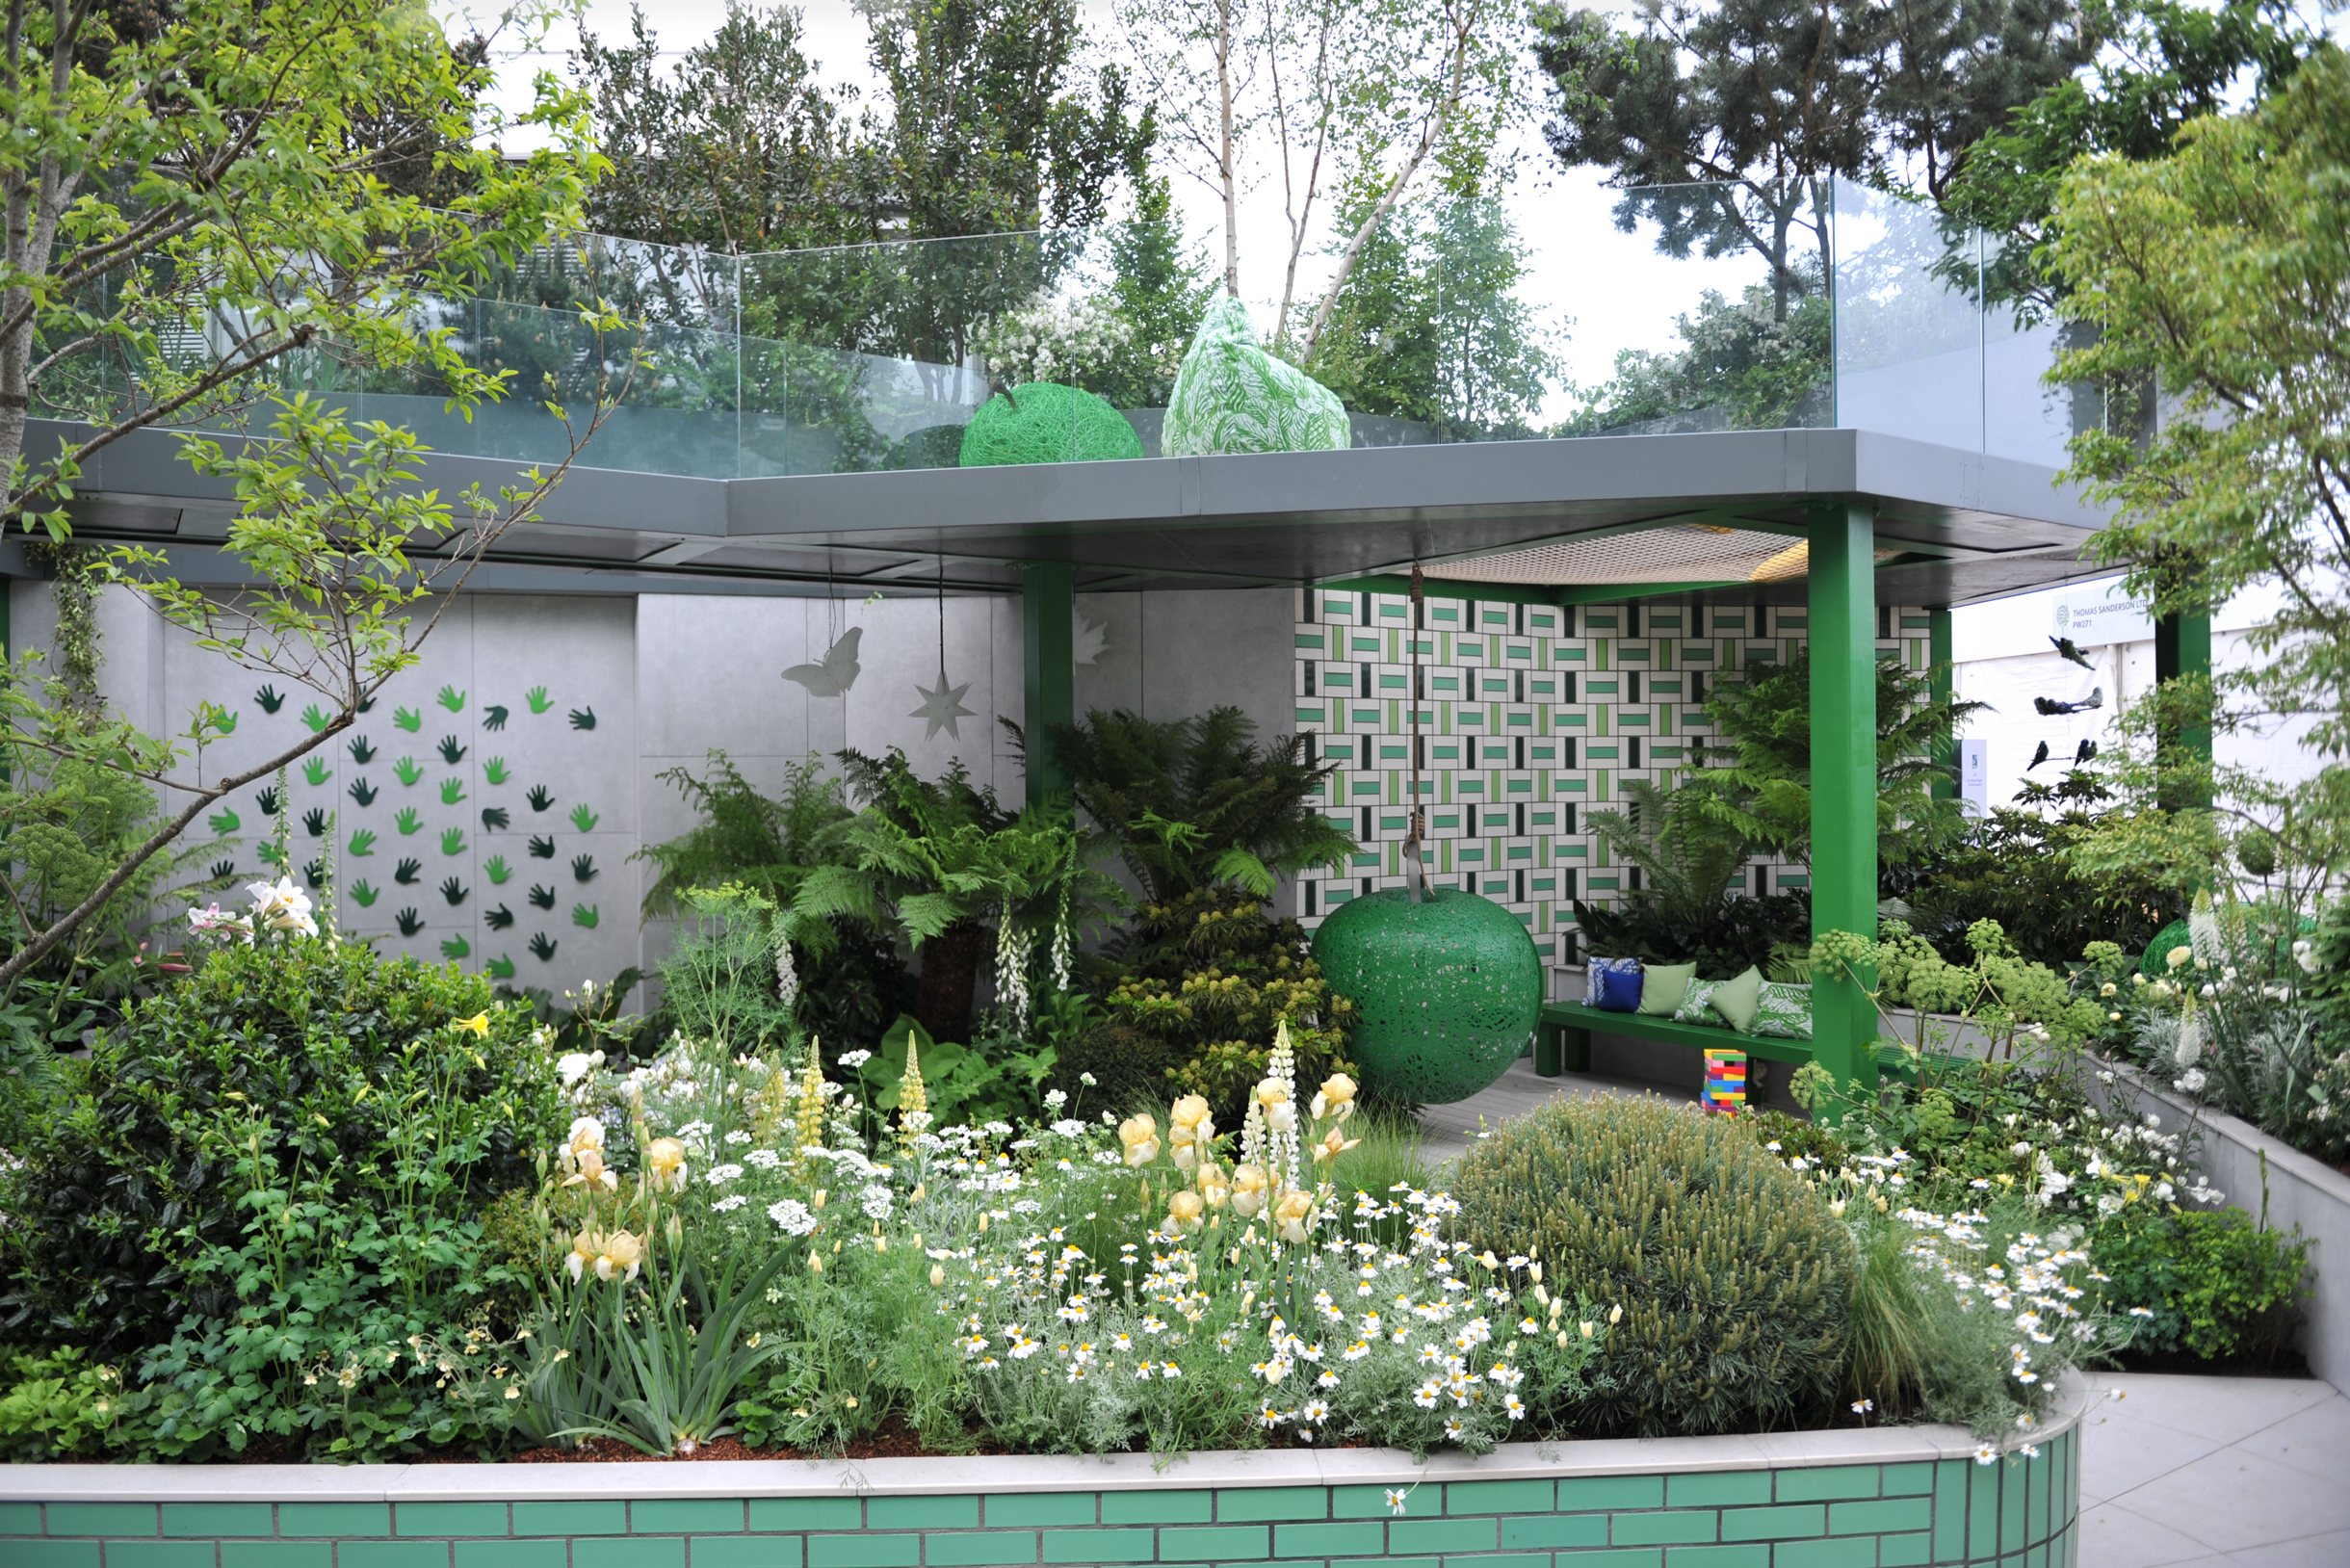 Зеленый цвет подходит и для архитектуры. На мой взгляд, этот выставочный сад в Челси выглядел бы гораздо красивее, если бы вместо зеленого цвета в декоре здания использовали коричневый или даже тыквенный оранжевый. Фотография: Sergey V Kalyakin / Shutterstock / FOTODOM